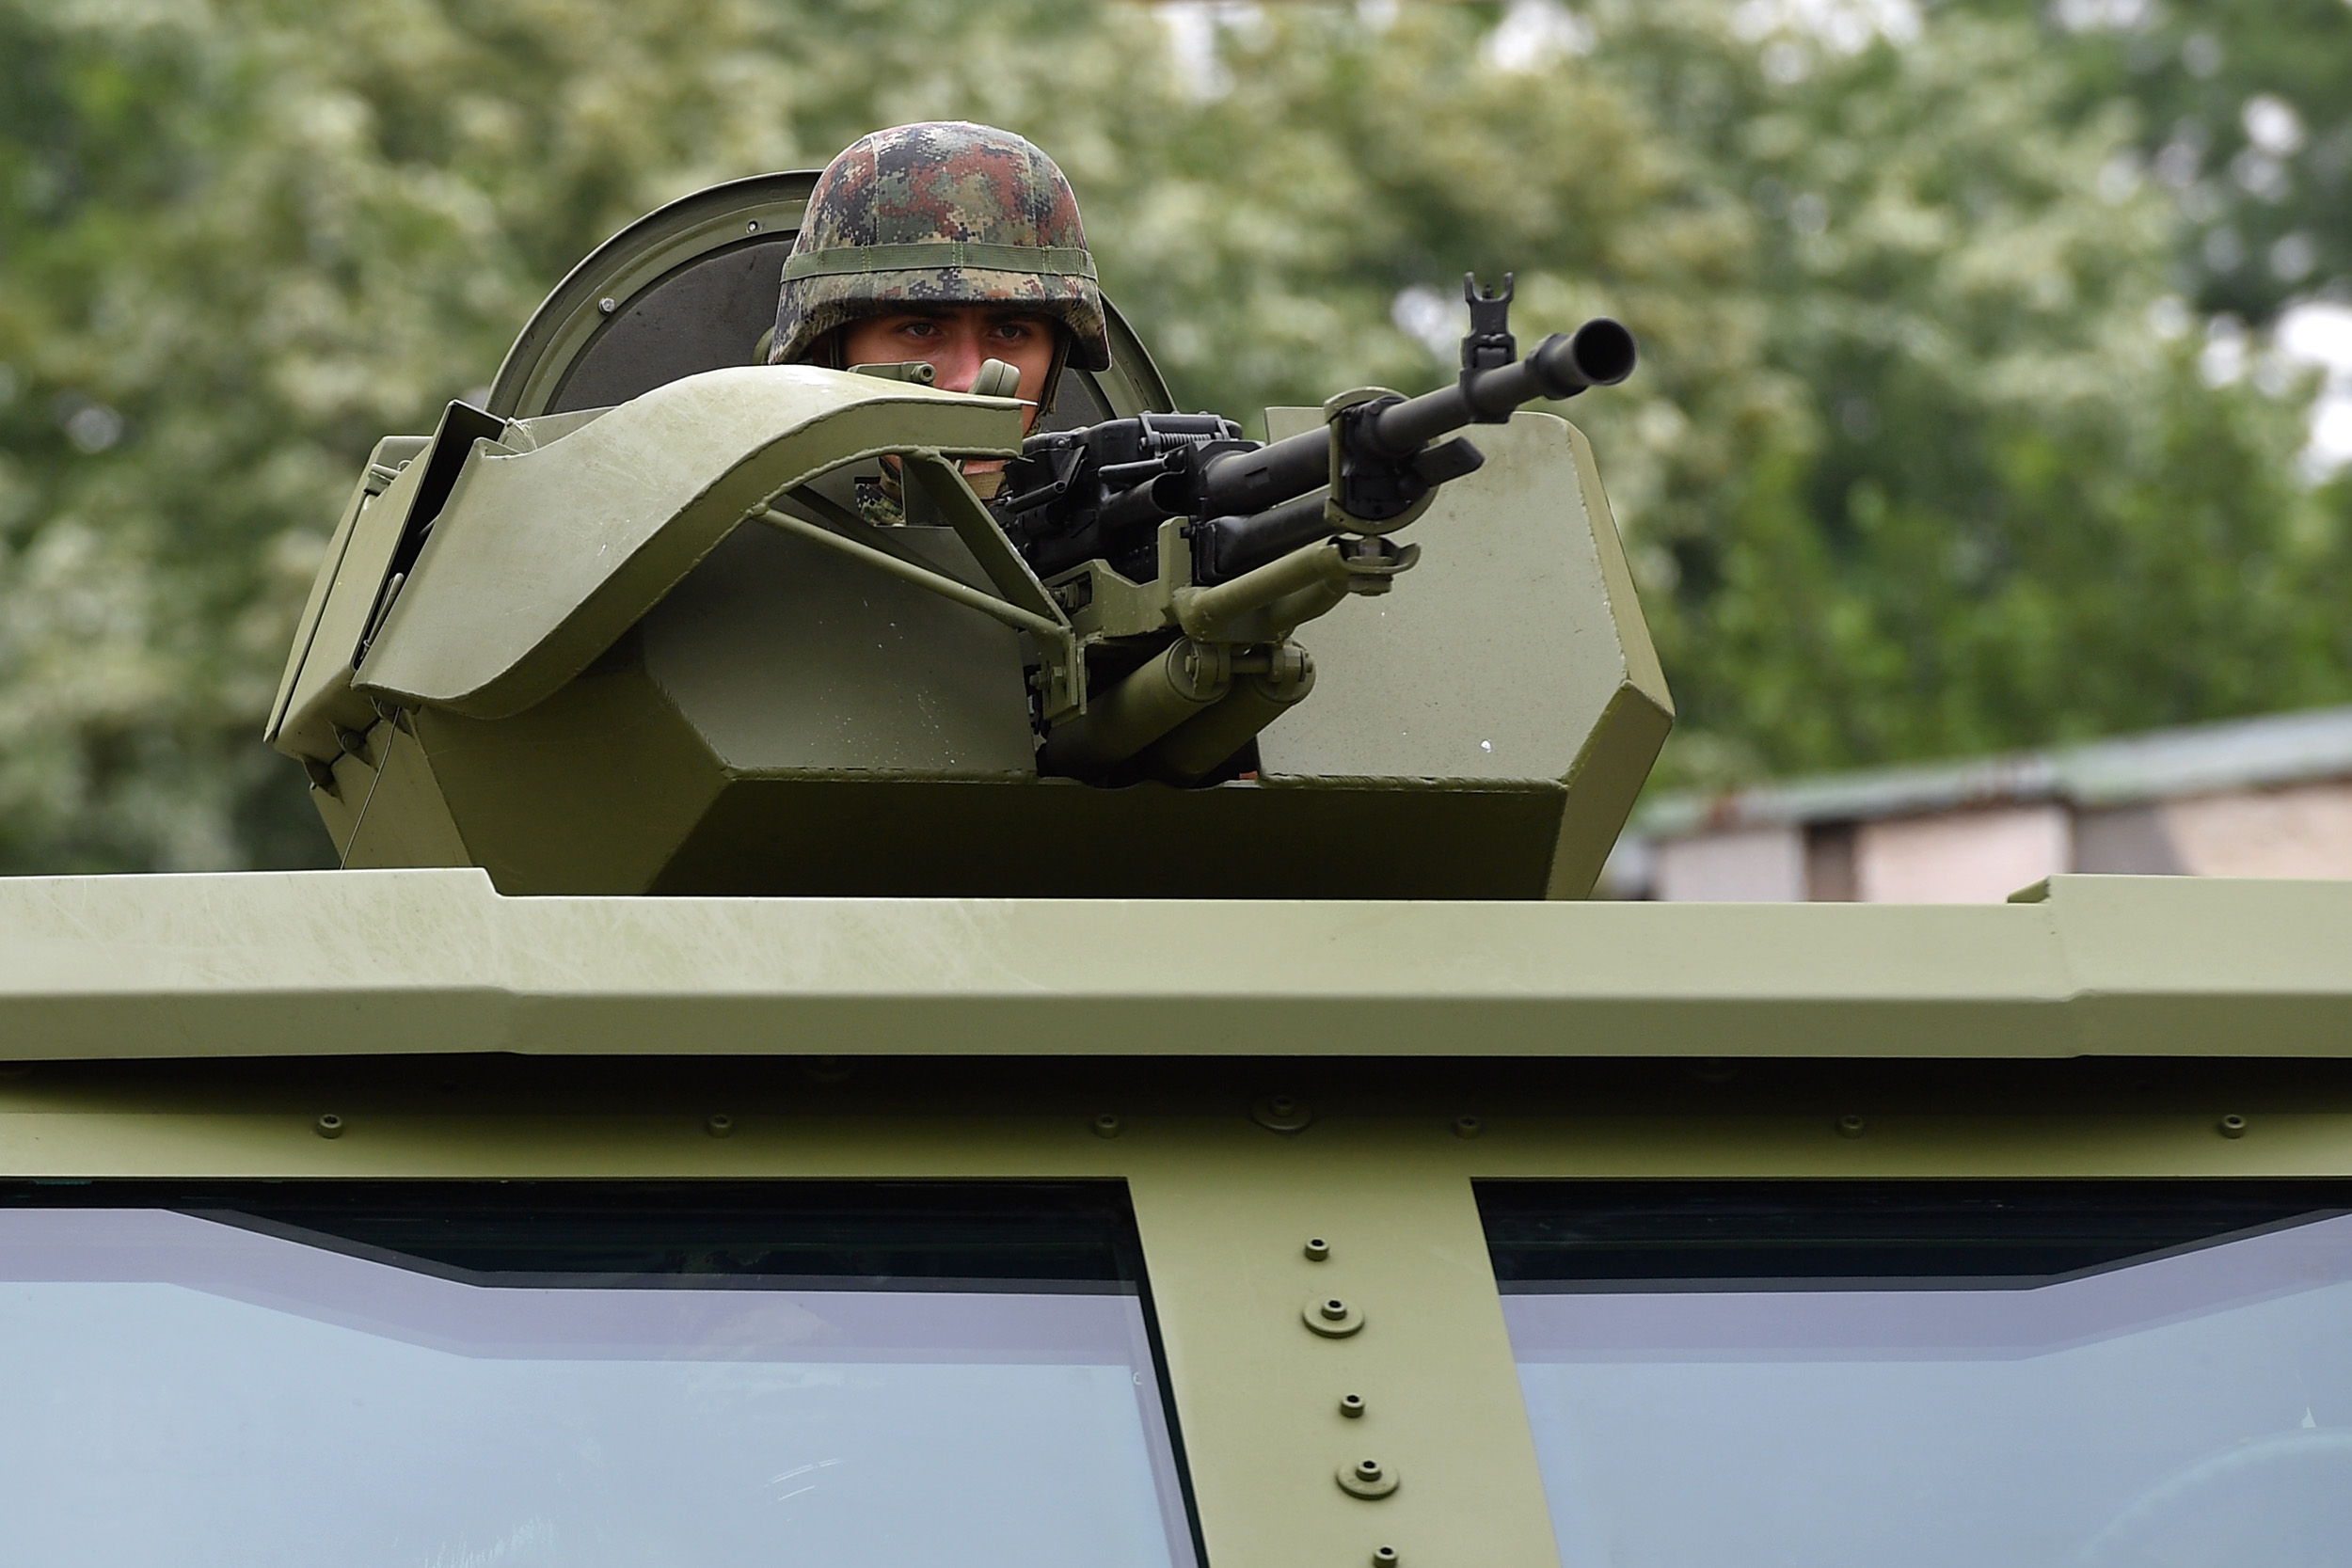 Serbian Armed Forces Unveils New M-20 6Ã—6 Mine-Resistant Ambush Protected (MRAP)